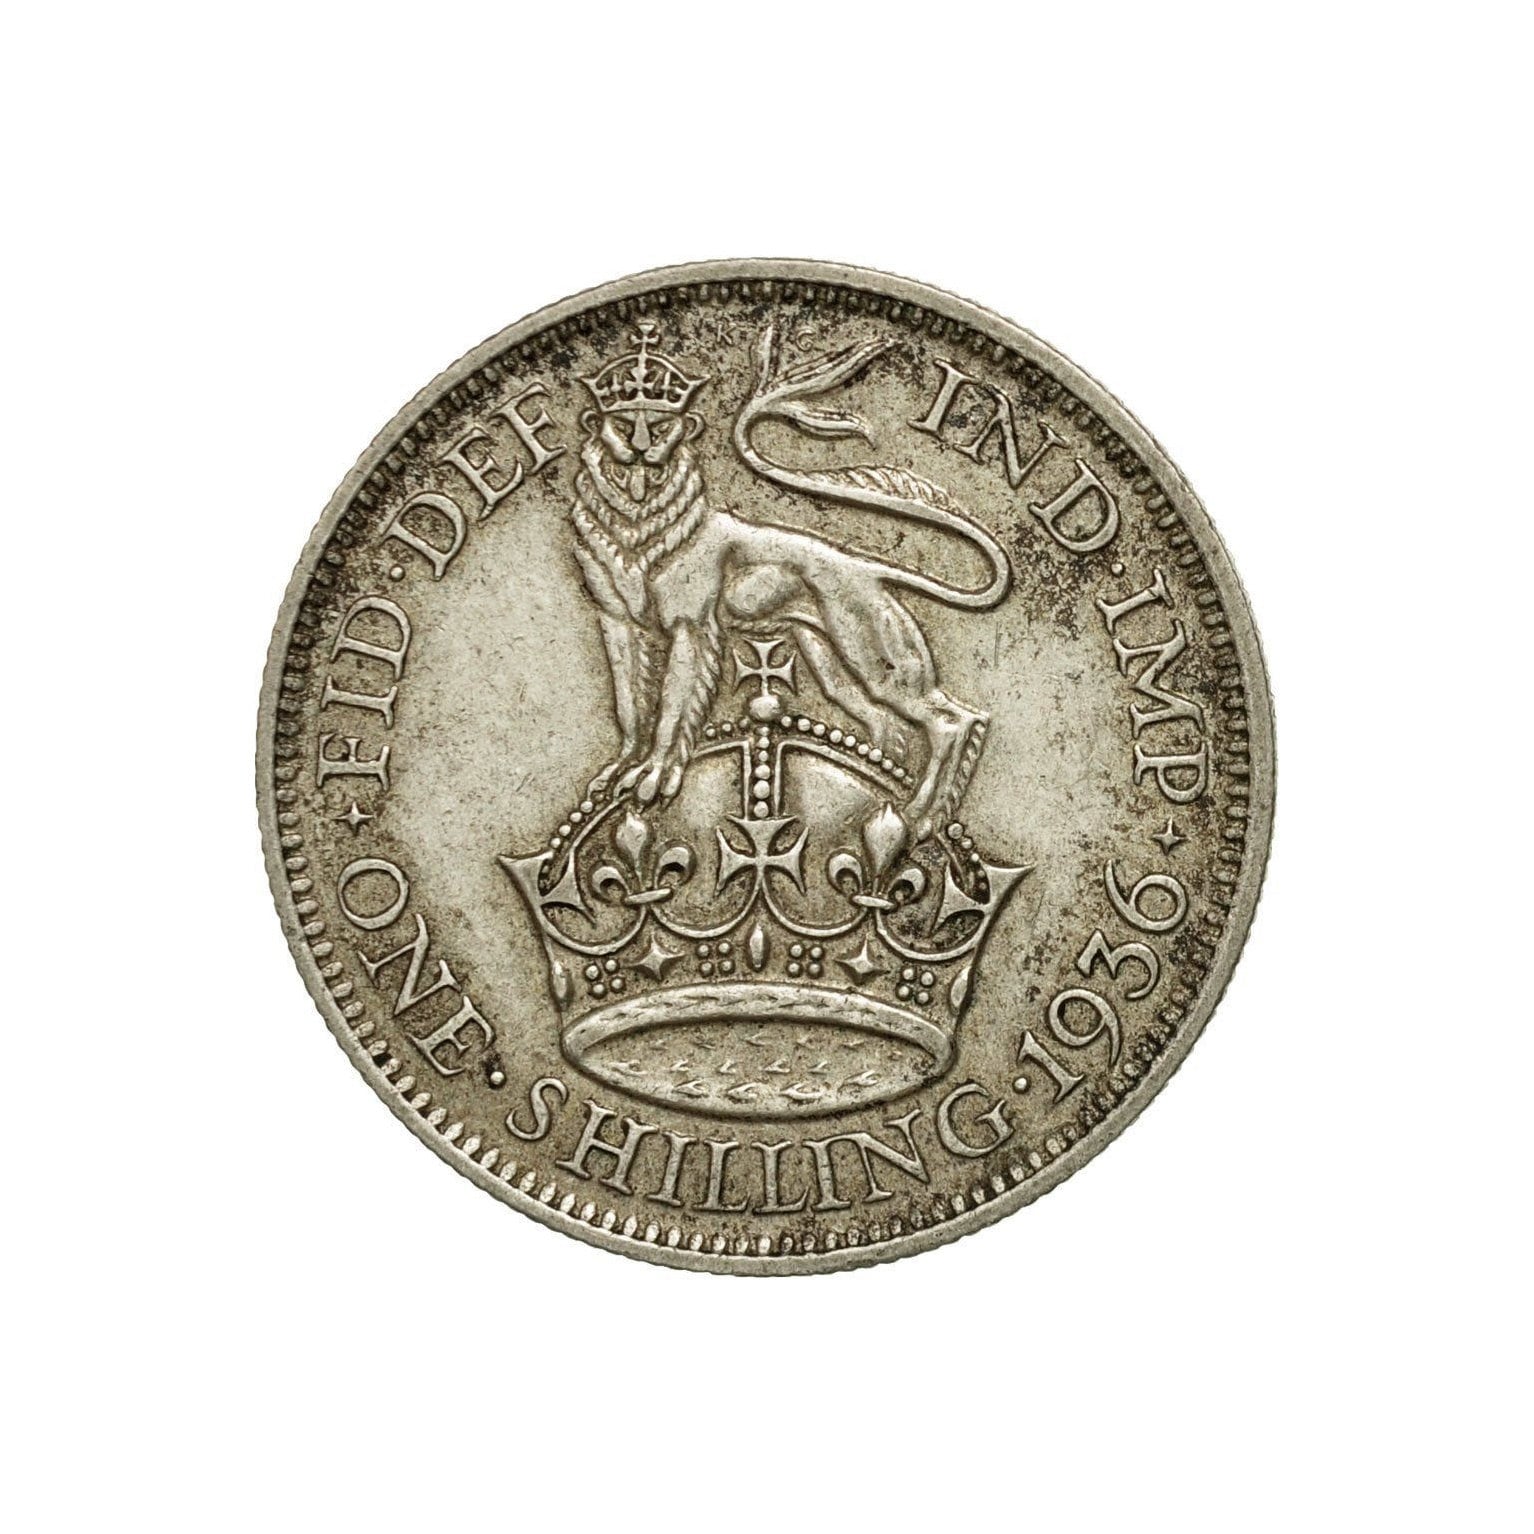 Boda Tarjeta w/king George V Lucky 500 Plata seis peniques Moneda Para Novia De Calzado V2 